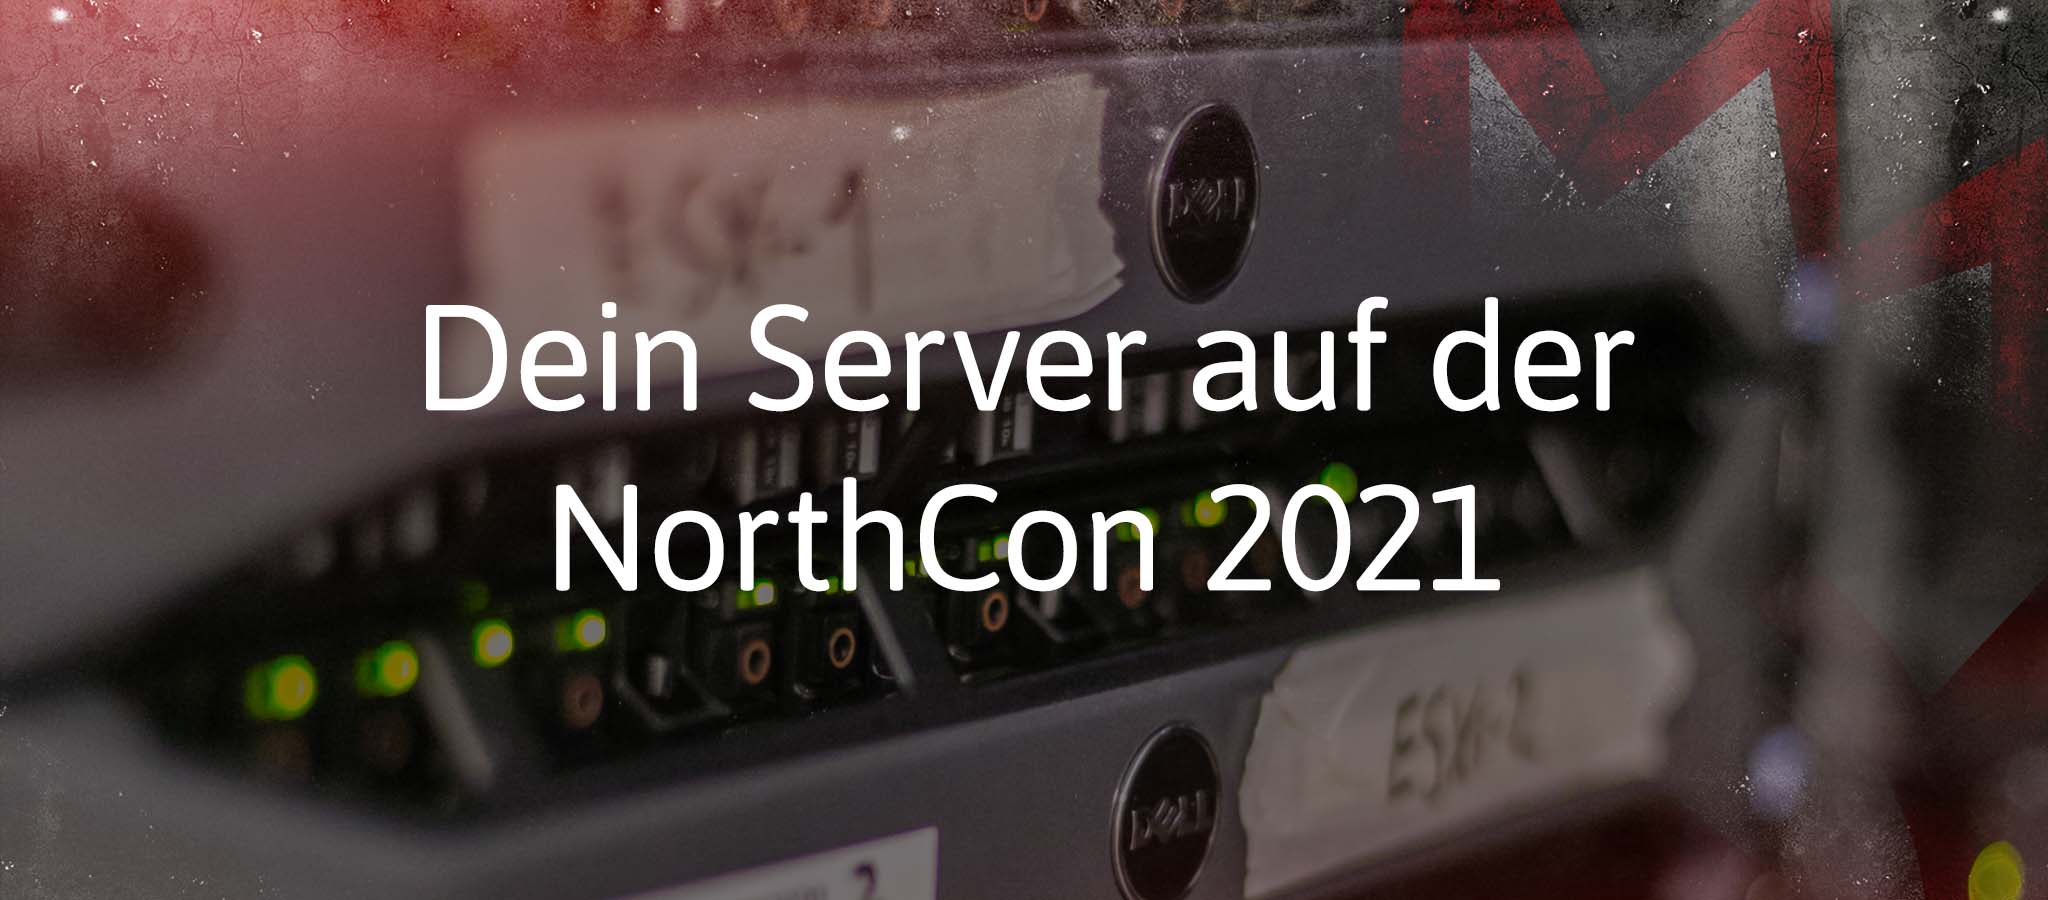 NorthCon 2021: Gastserver